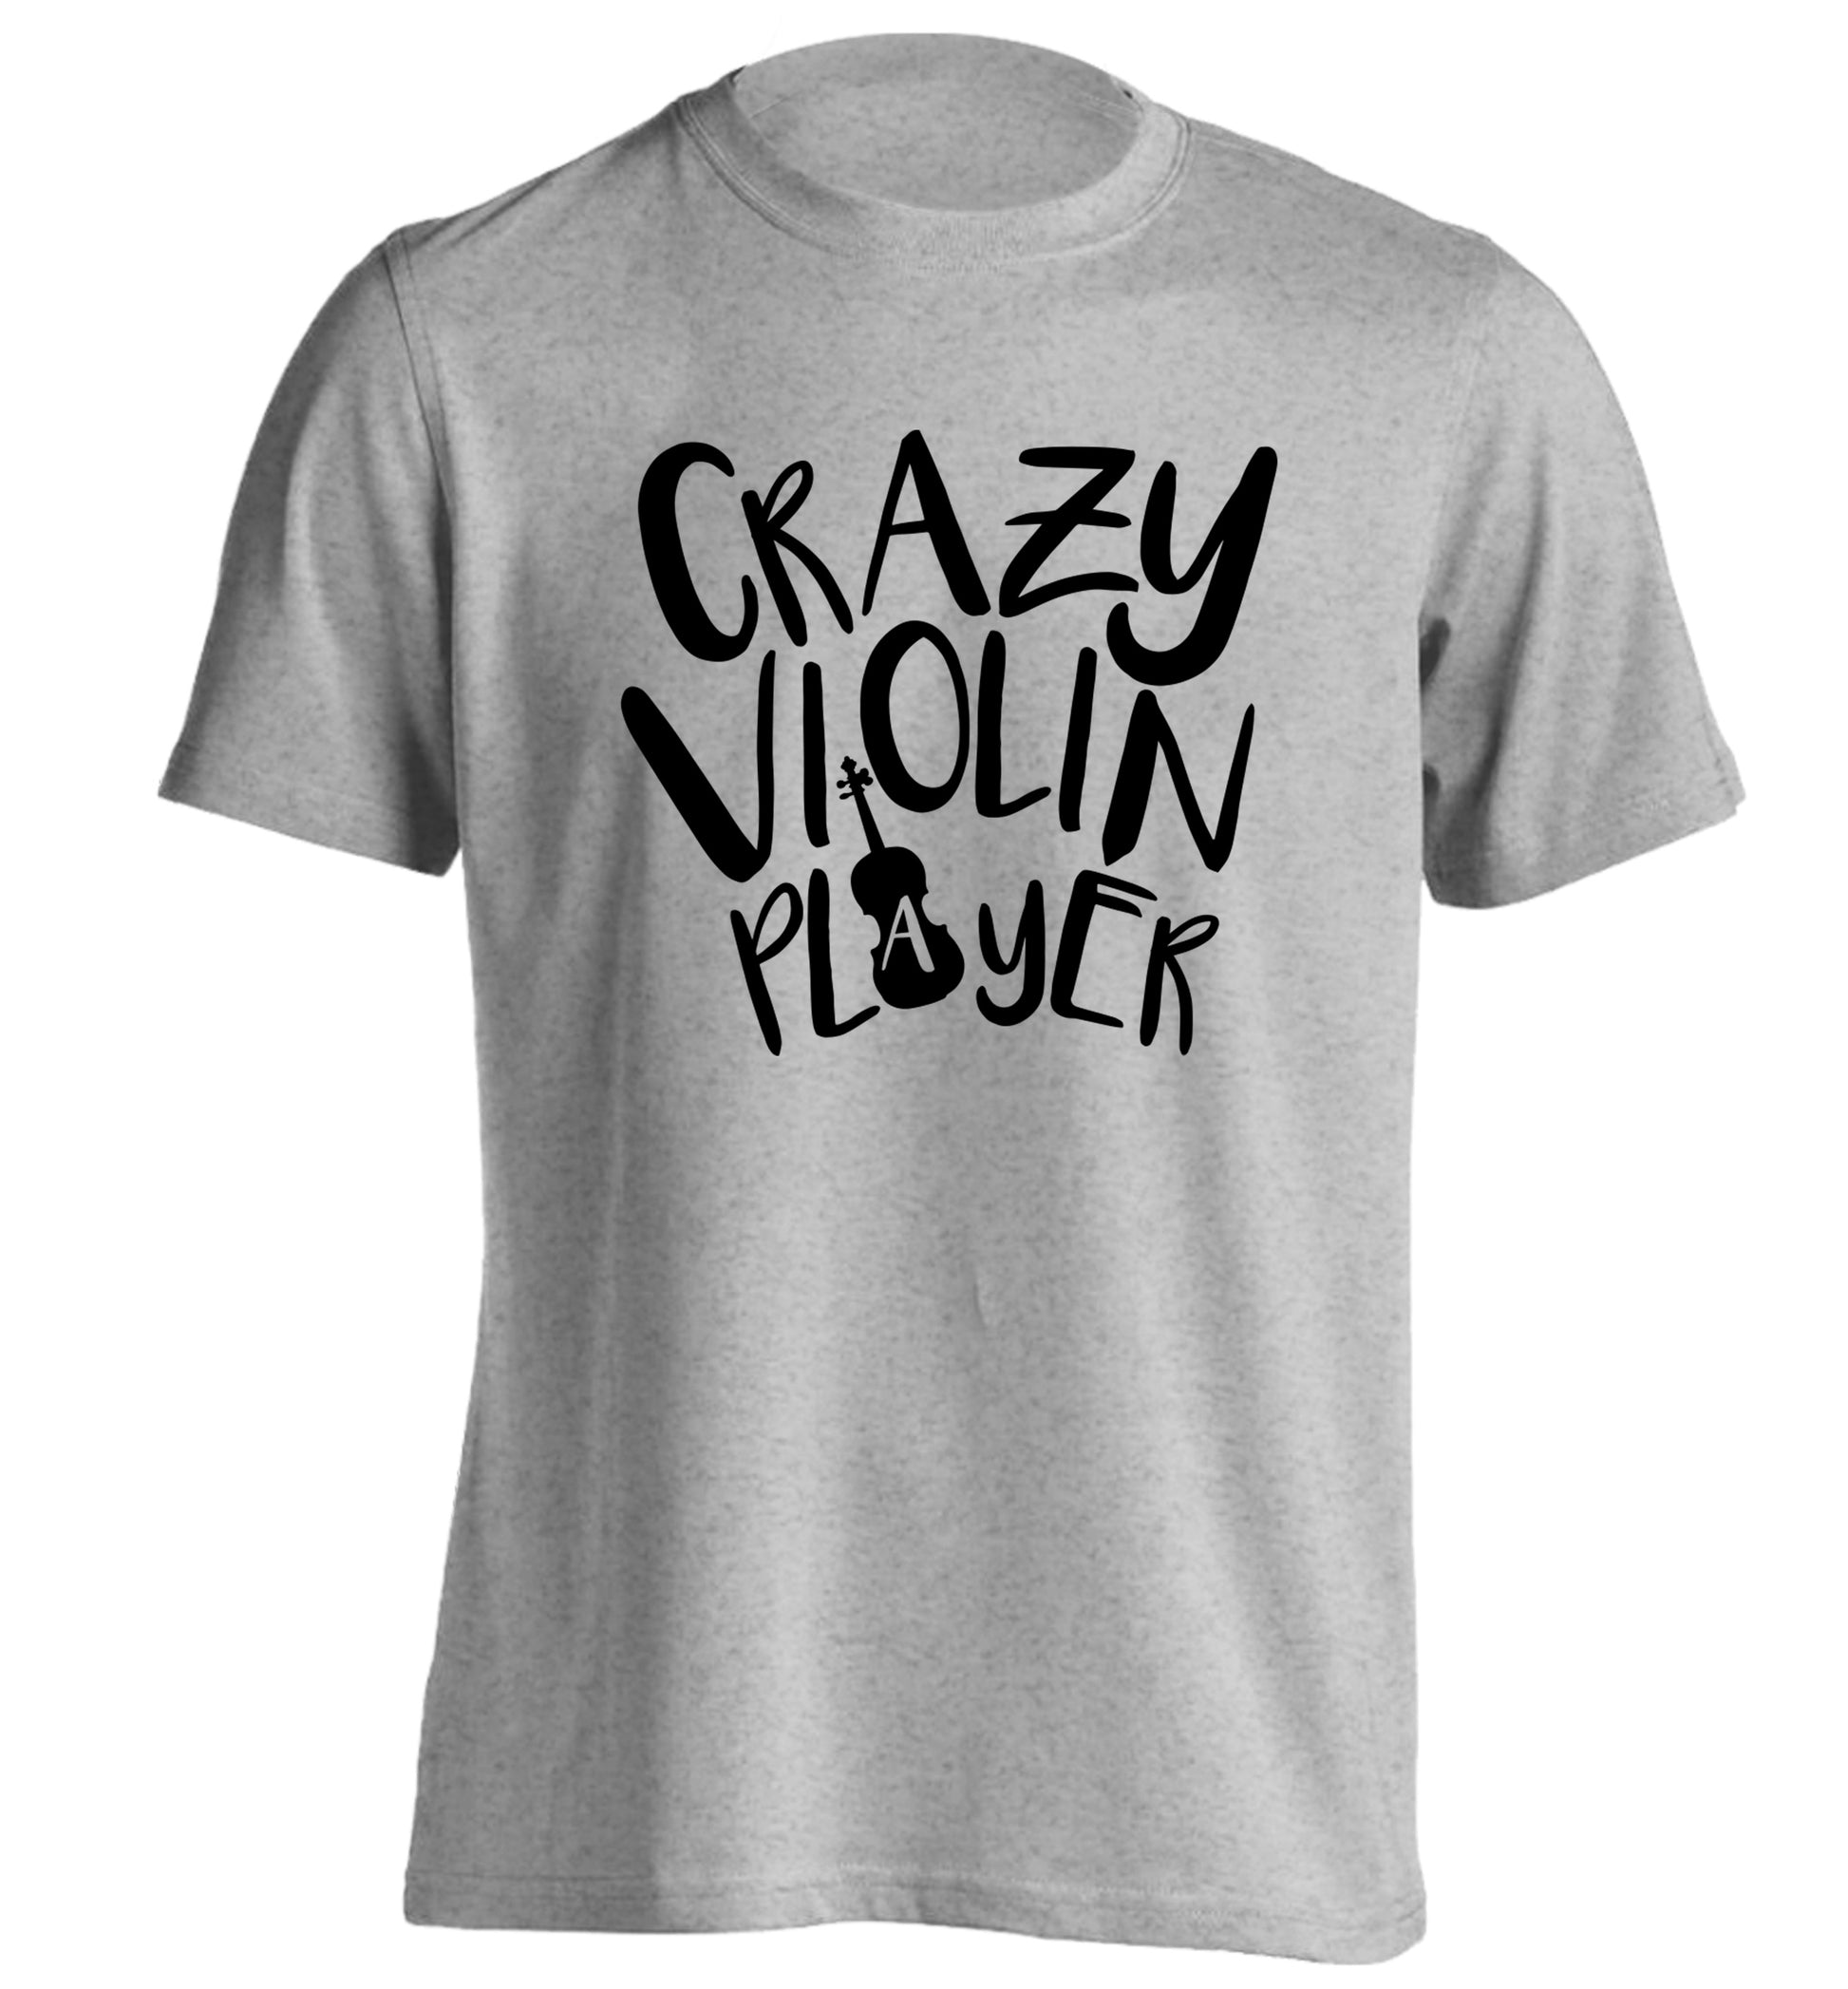 Crazy Violin Player adults unisex grey Tshirt 2XL